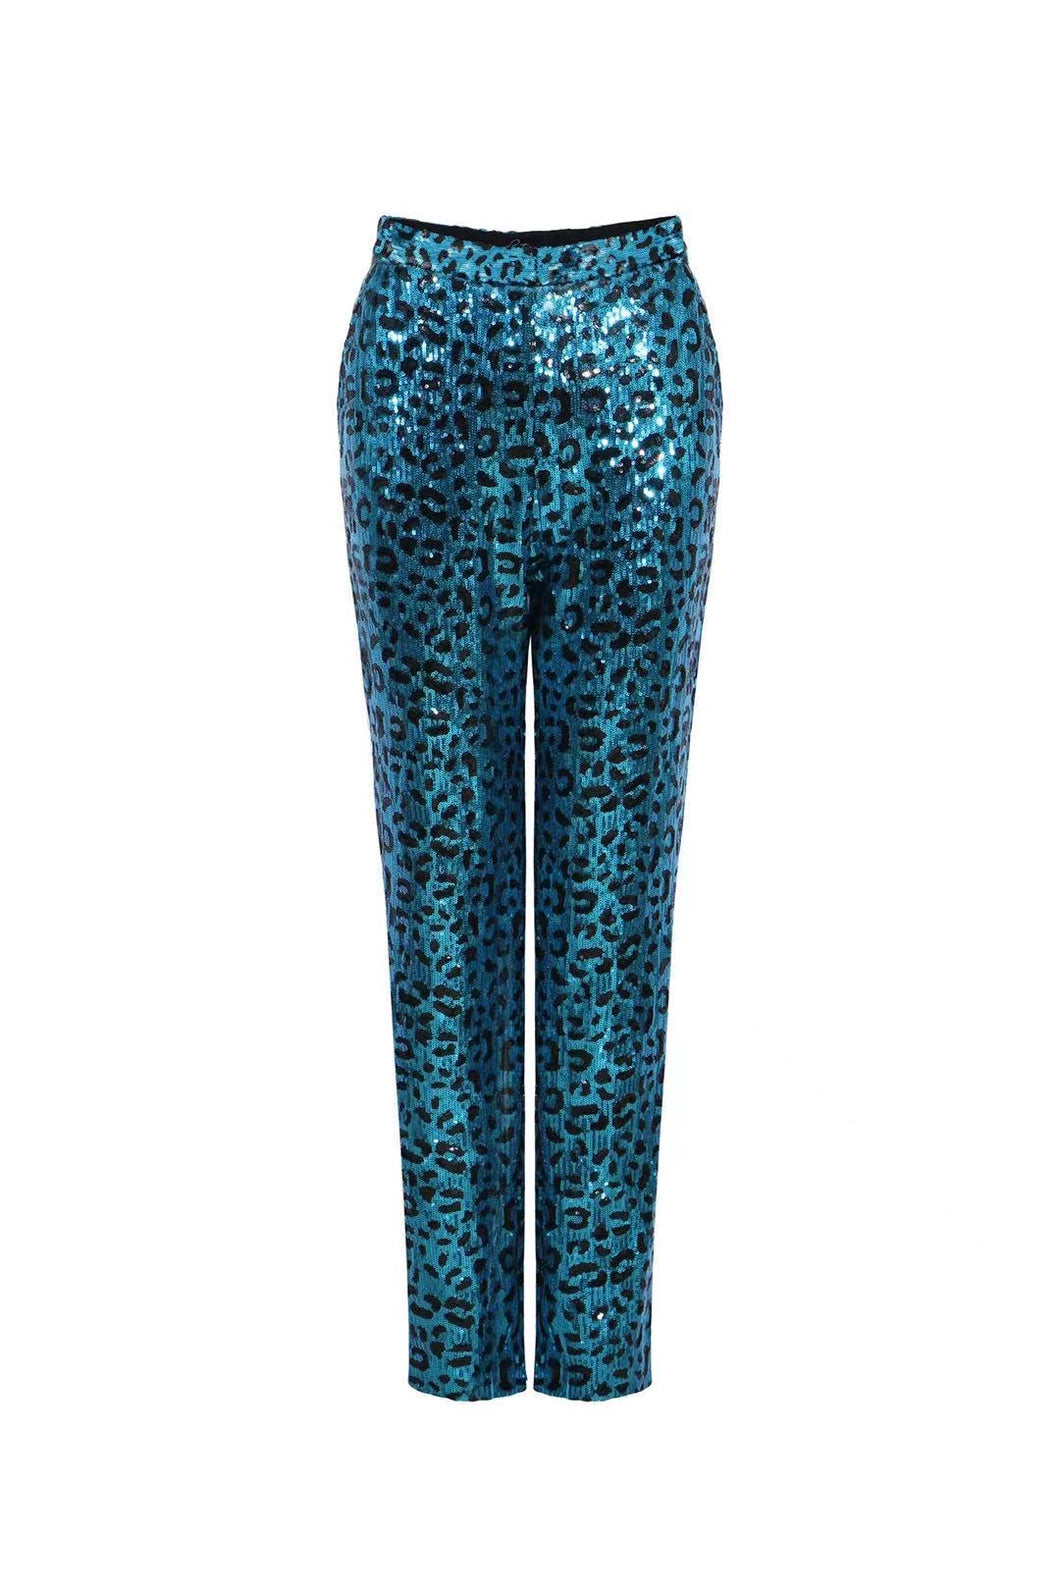 Stacy Sequin Pant- Blue Leopard Print